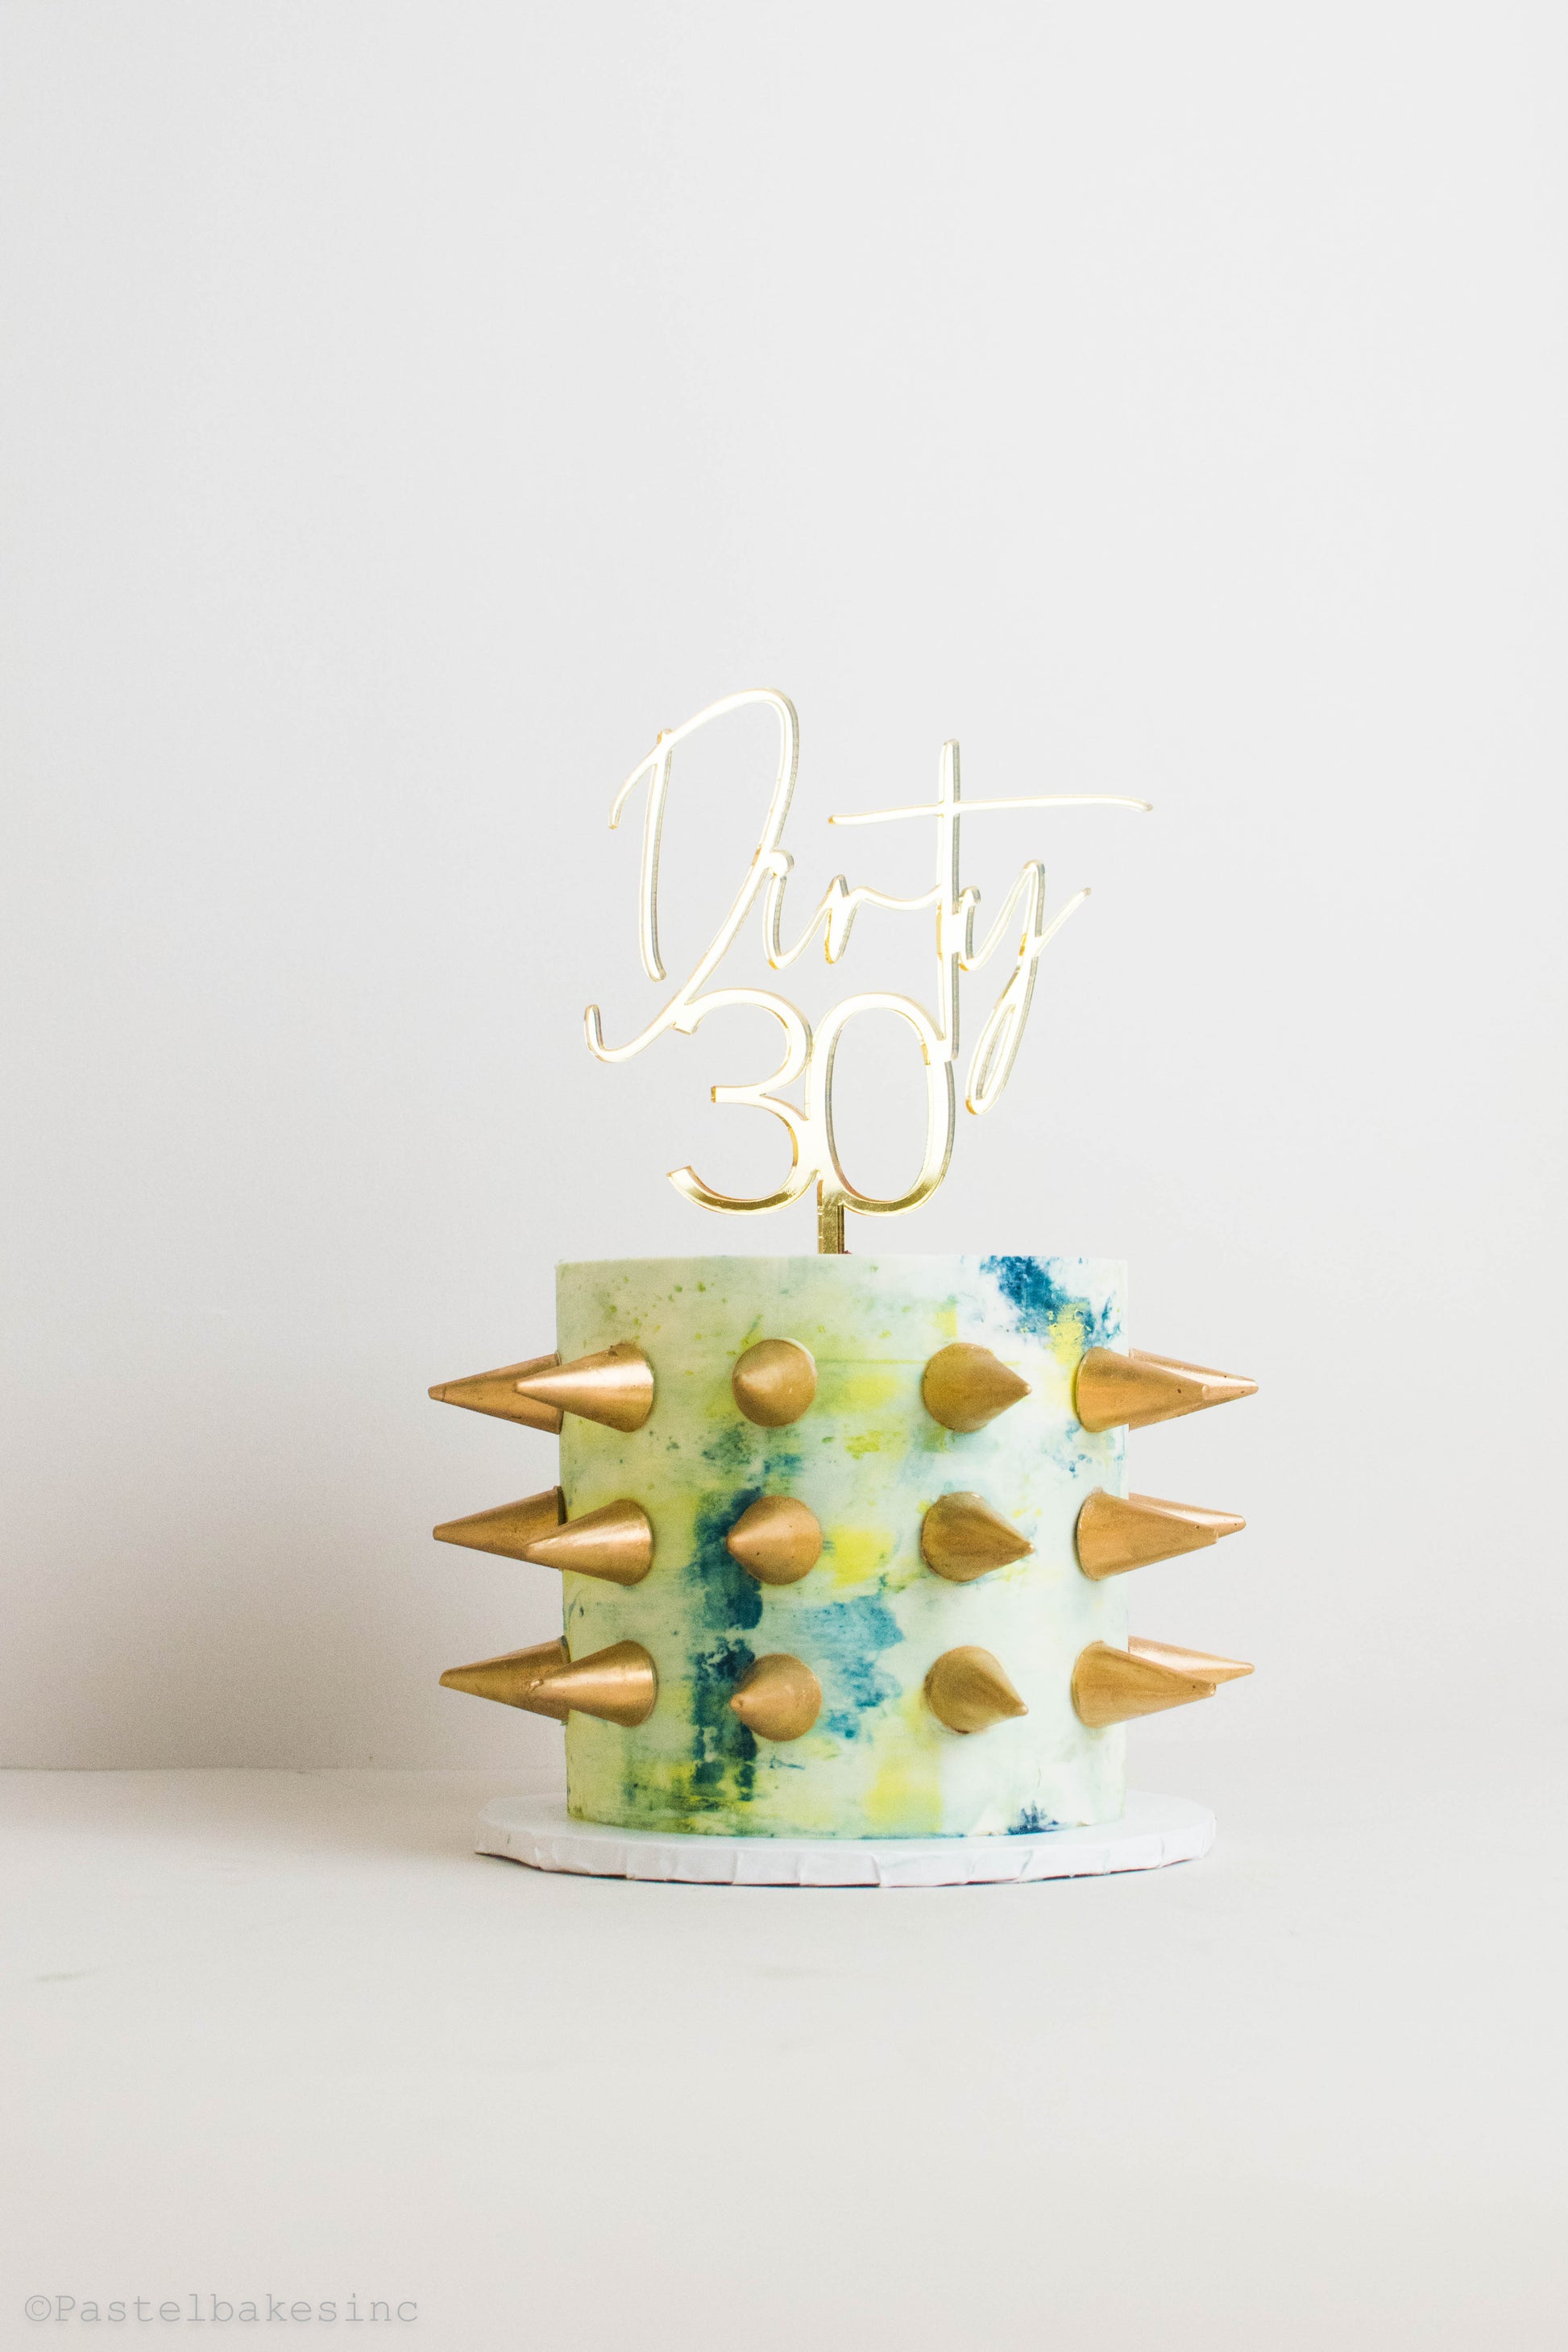 Custom Cake/Cupcake Design.